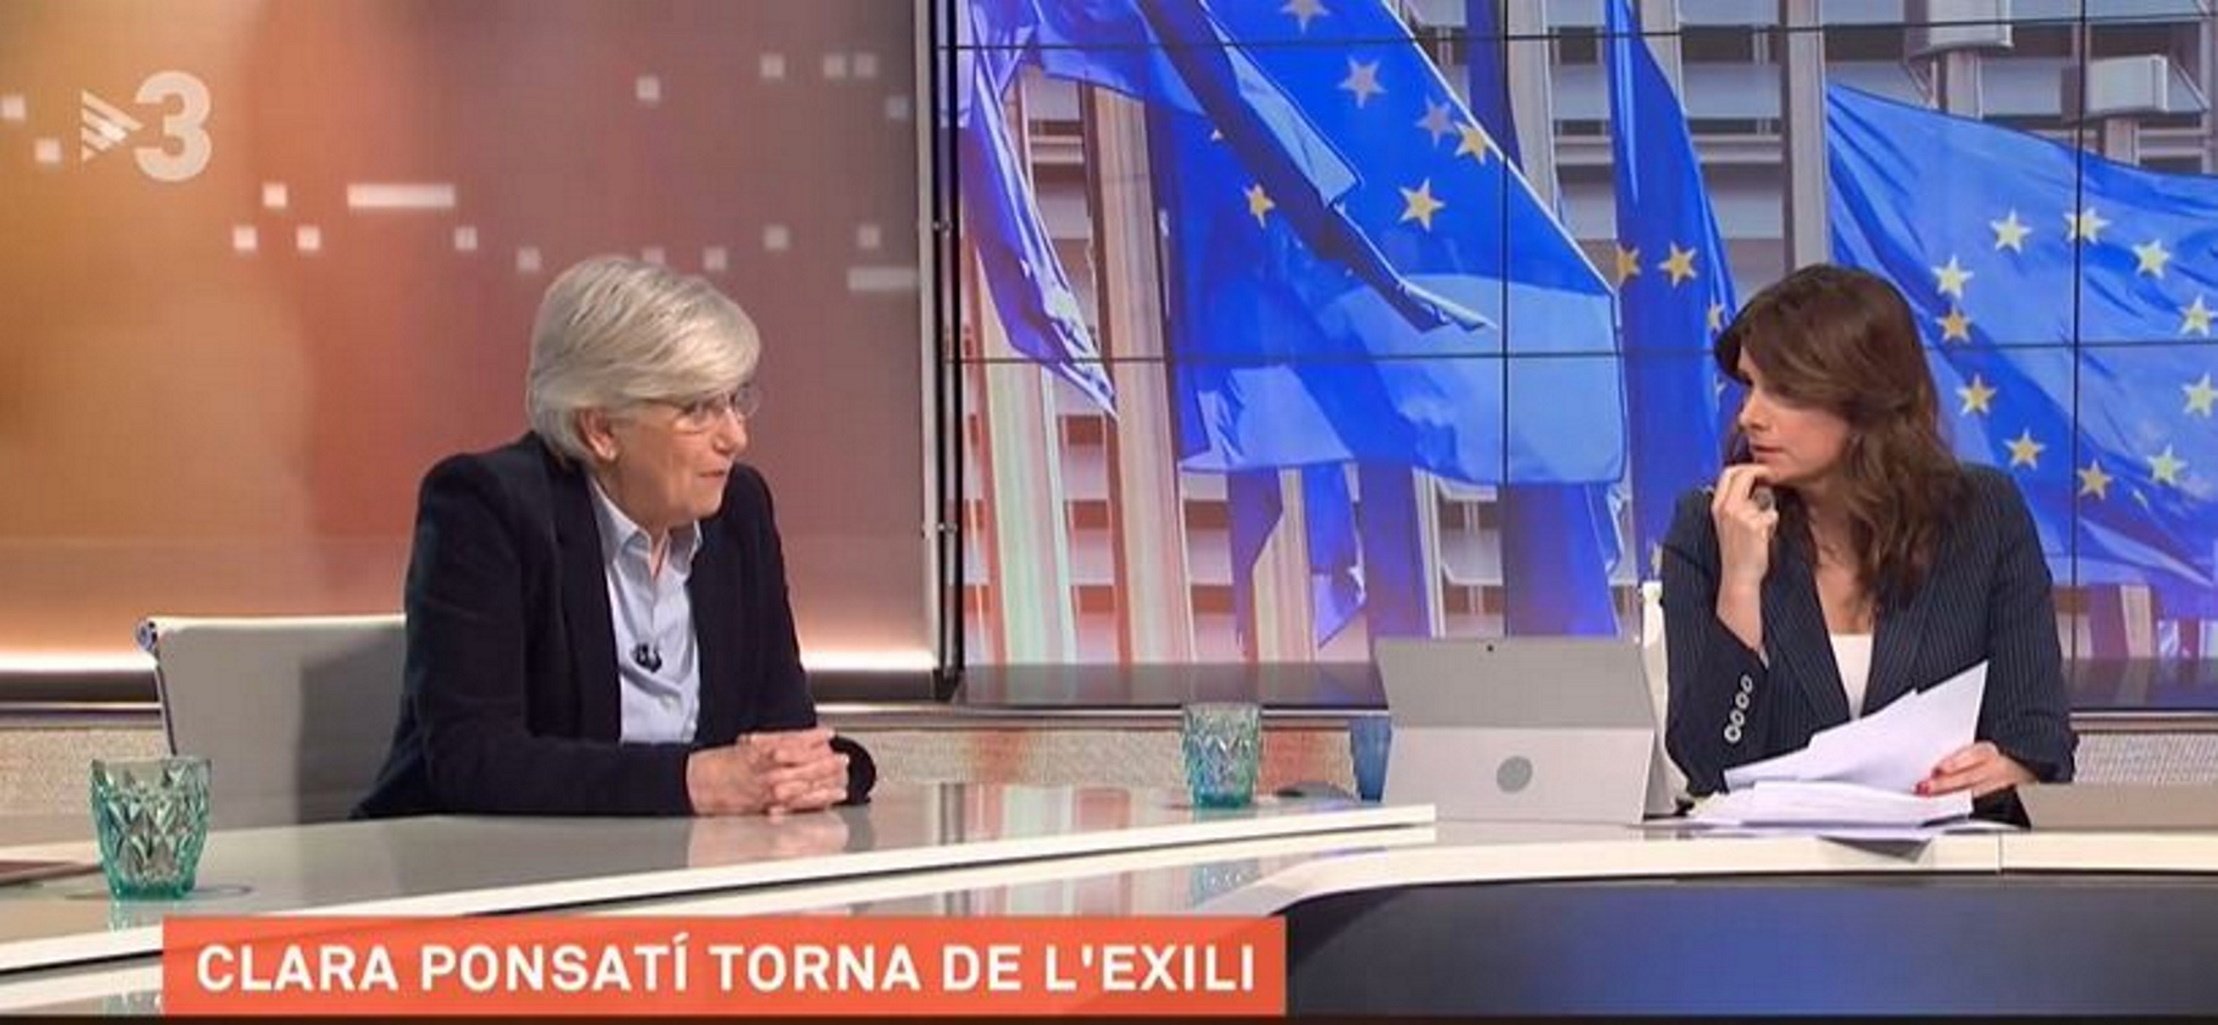 Clara Ponsatí, indignada: "Quan he marxat de TV3, els tertulians s'han dedicat a esbudellar"